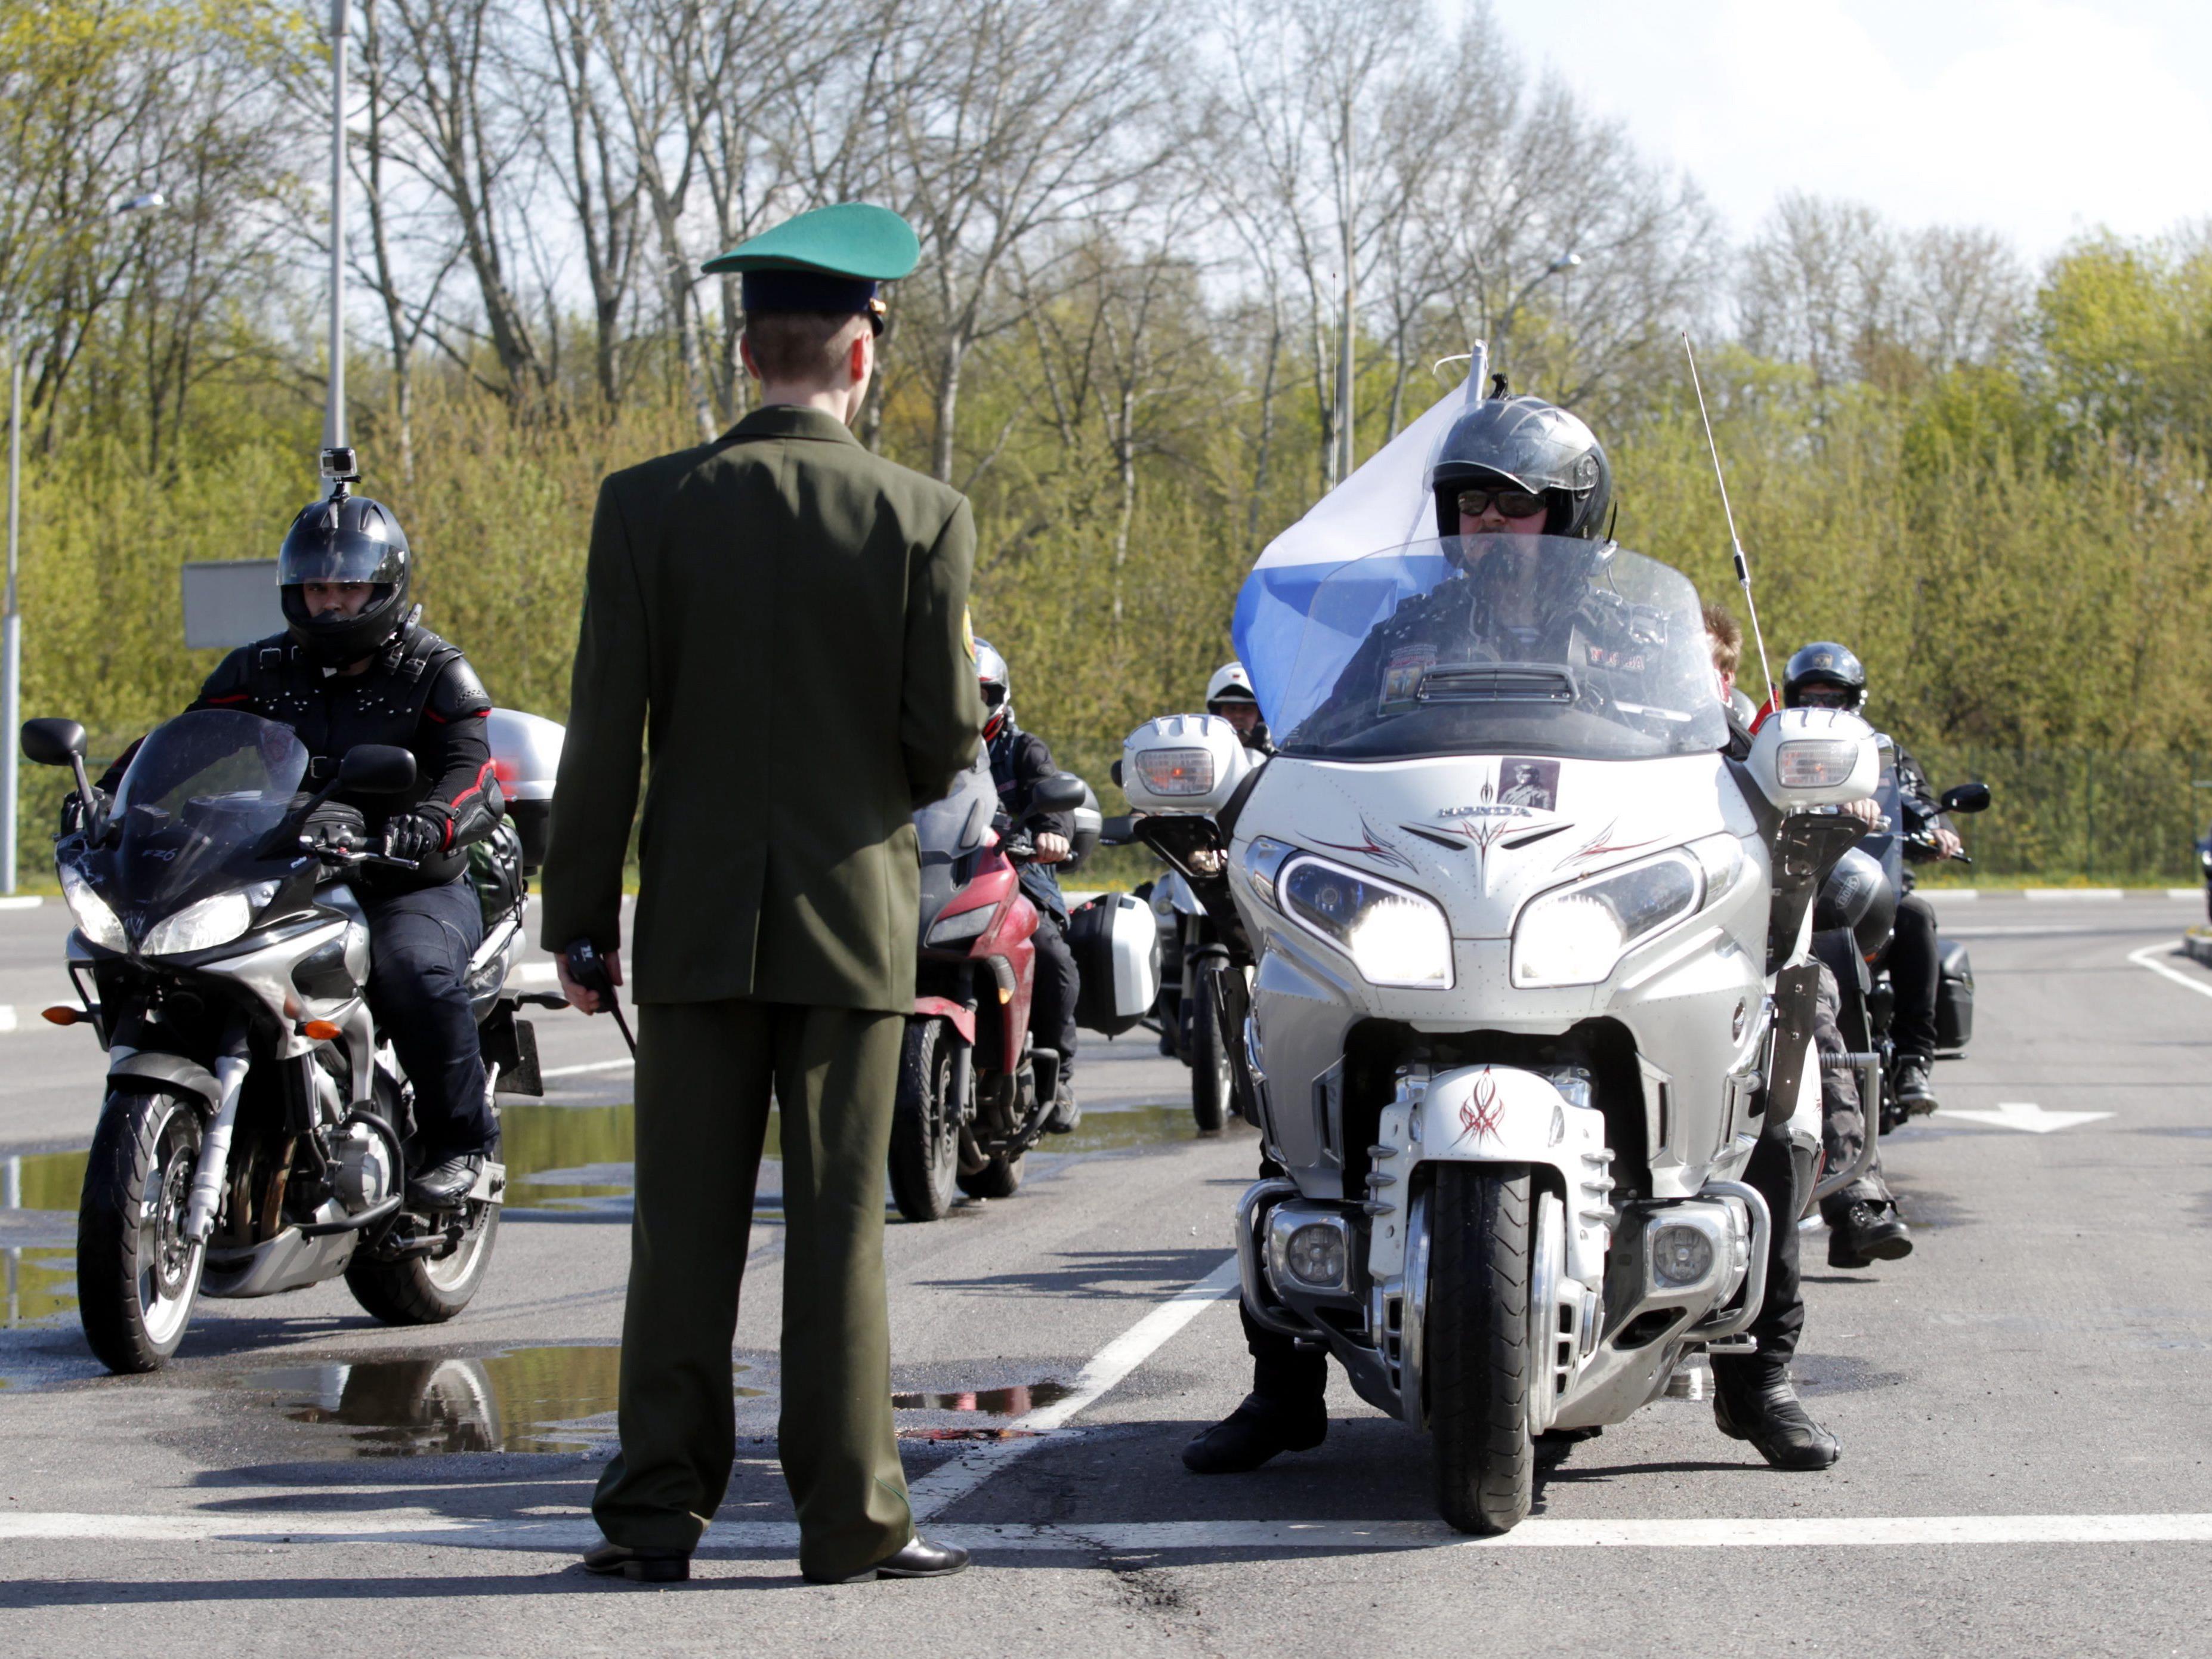 Laut Medien fuhren erste Mitglieder des Motorradclubs bereits am Sonntag über Grenze.